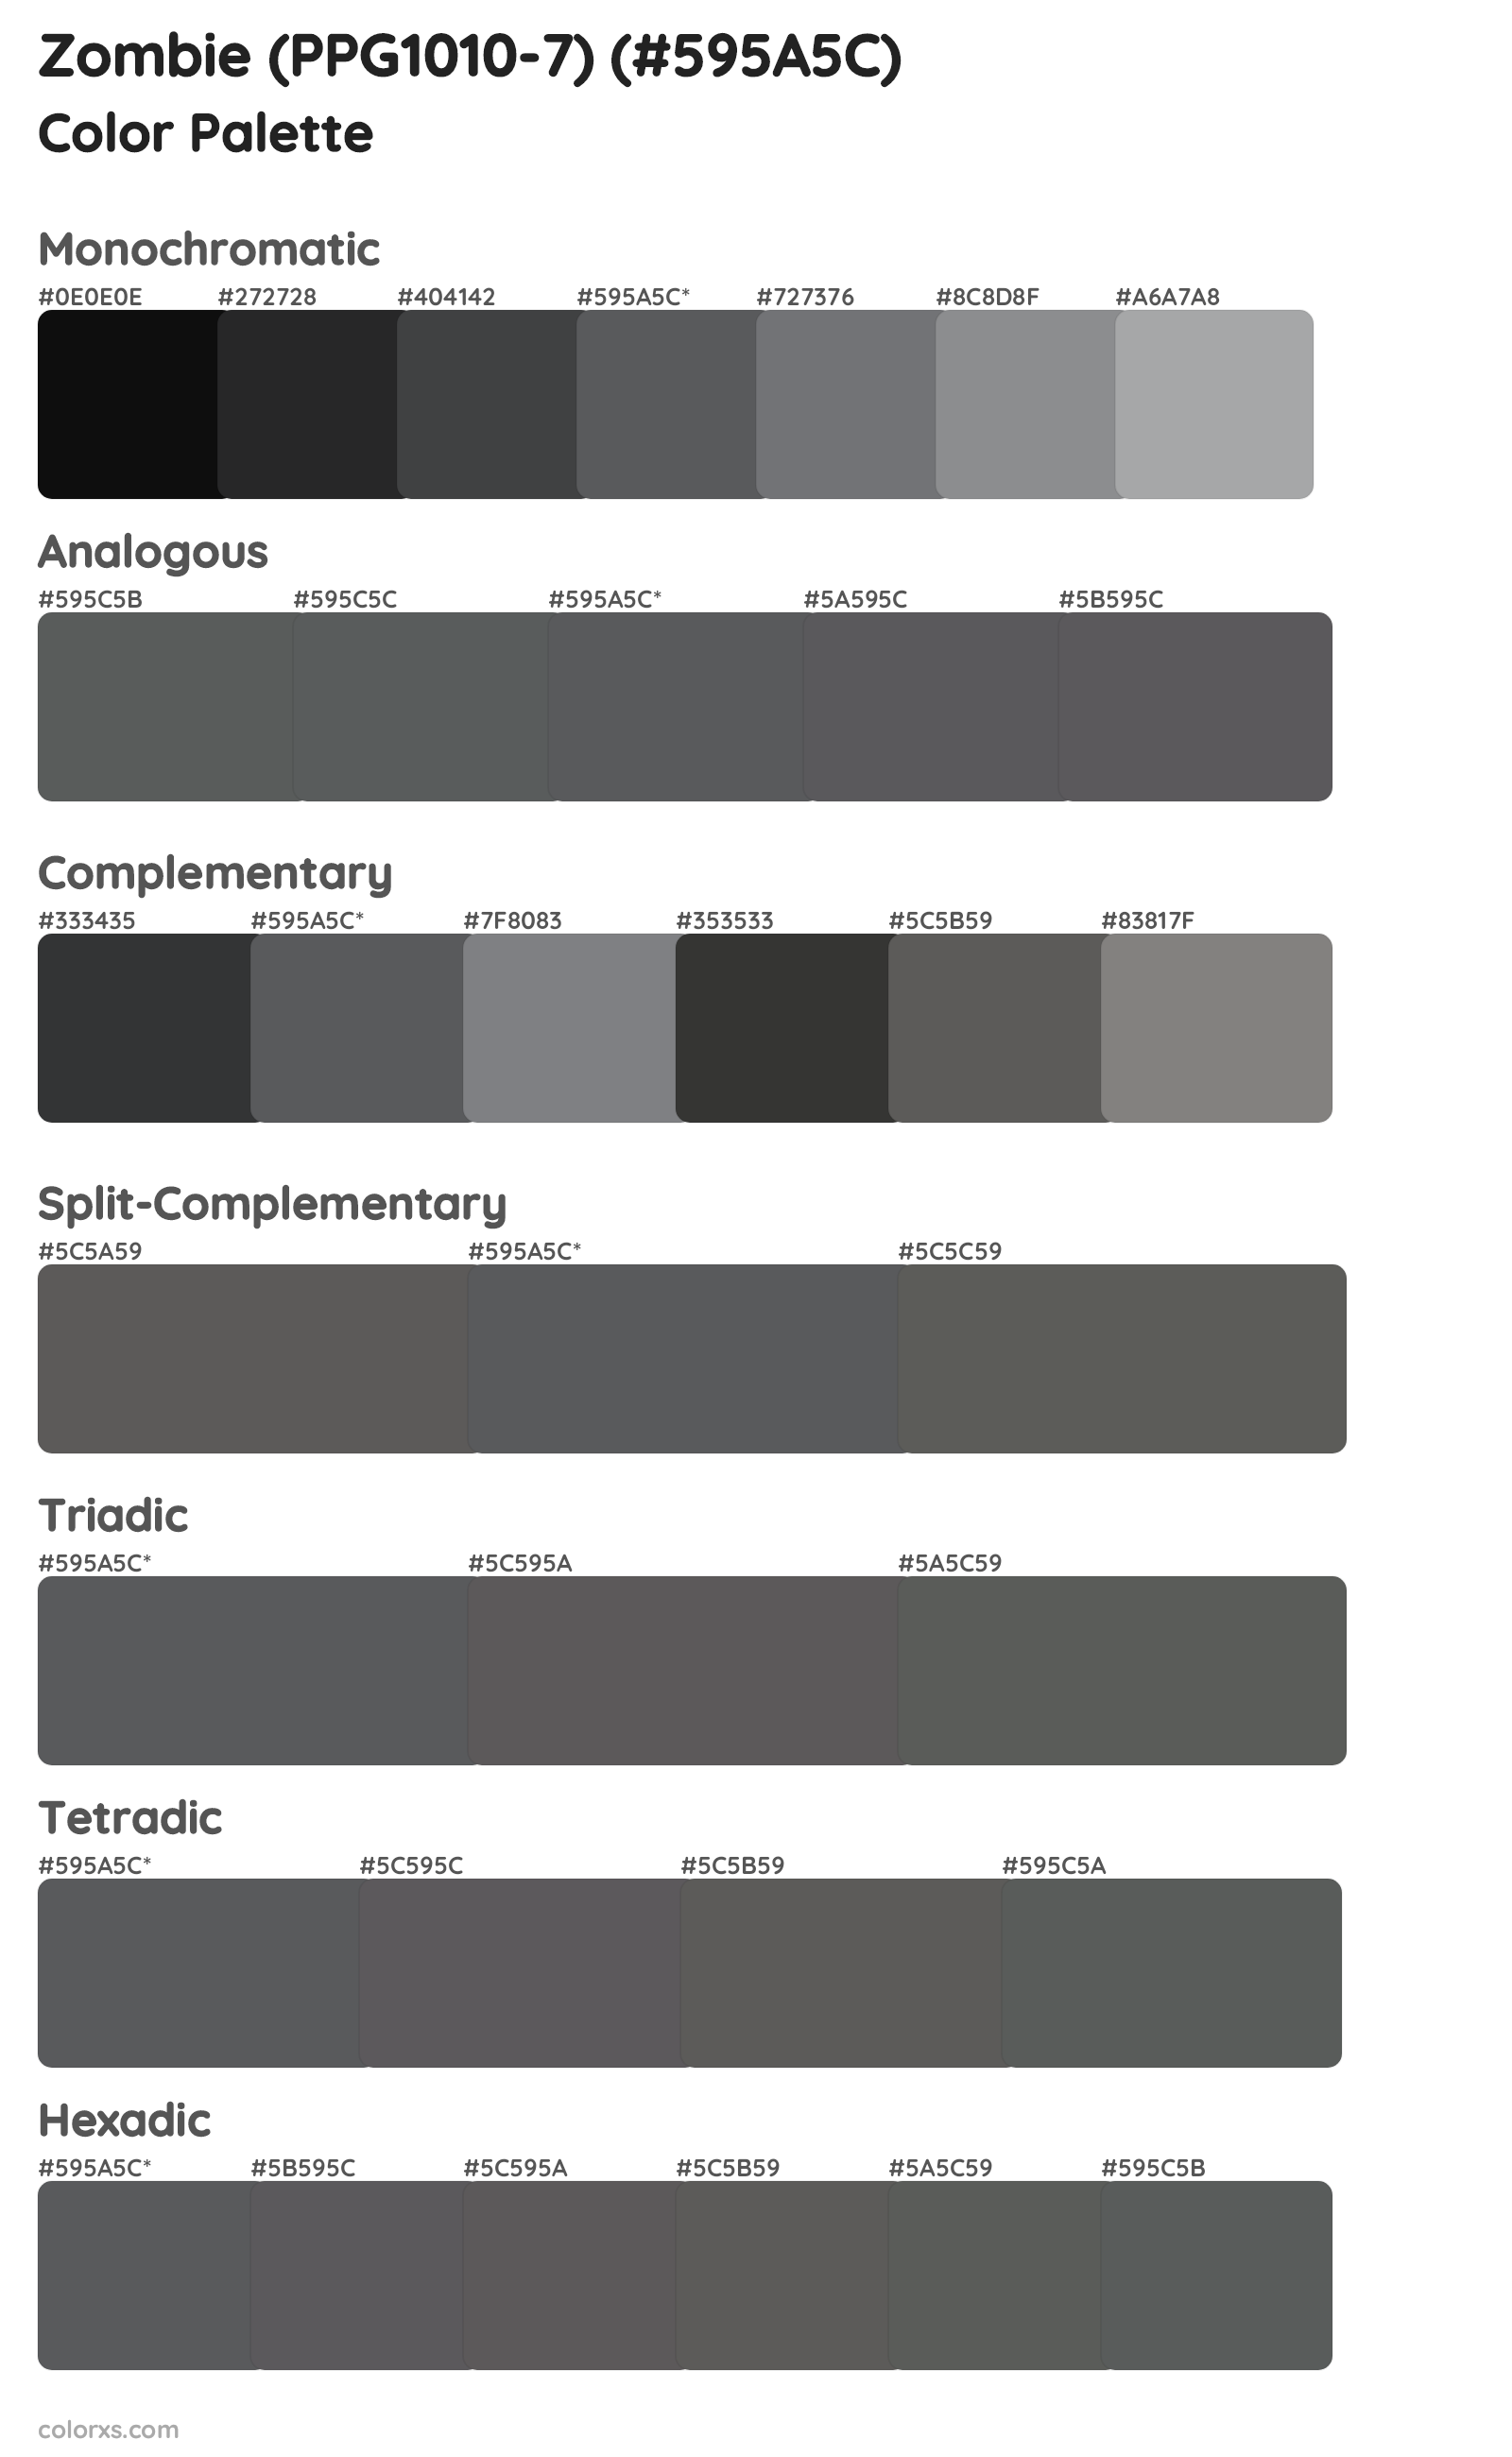 Zombie (PPG1010-7) Color Scheme Palettes